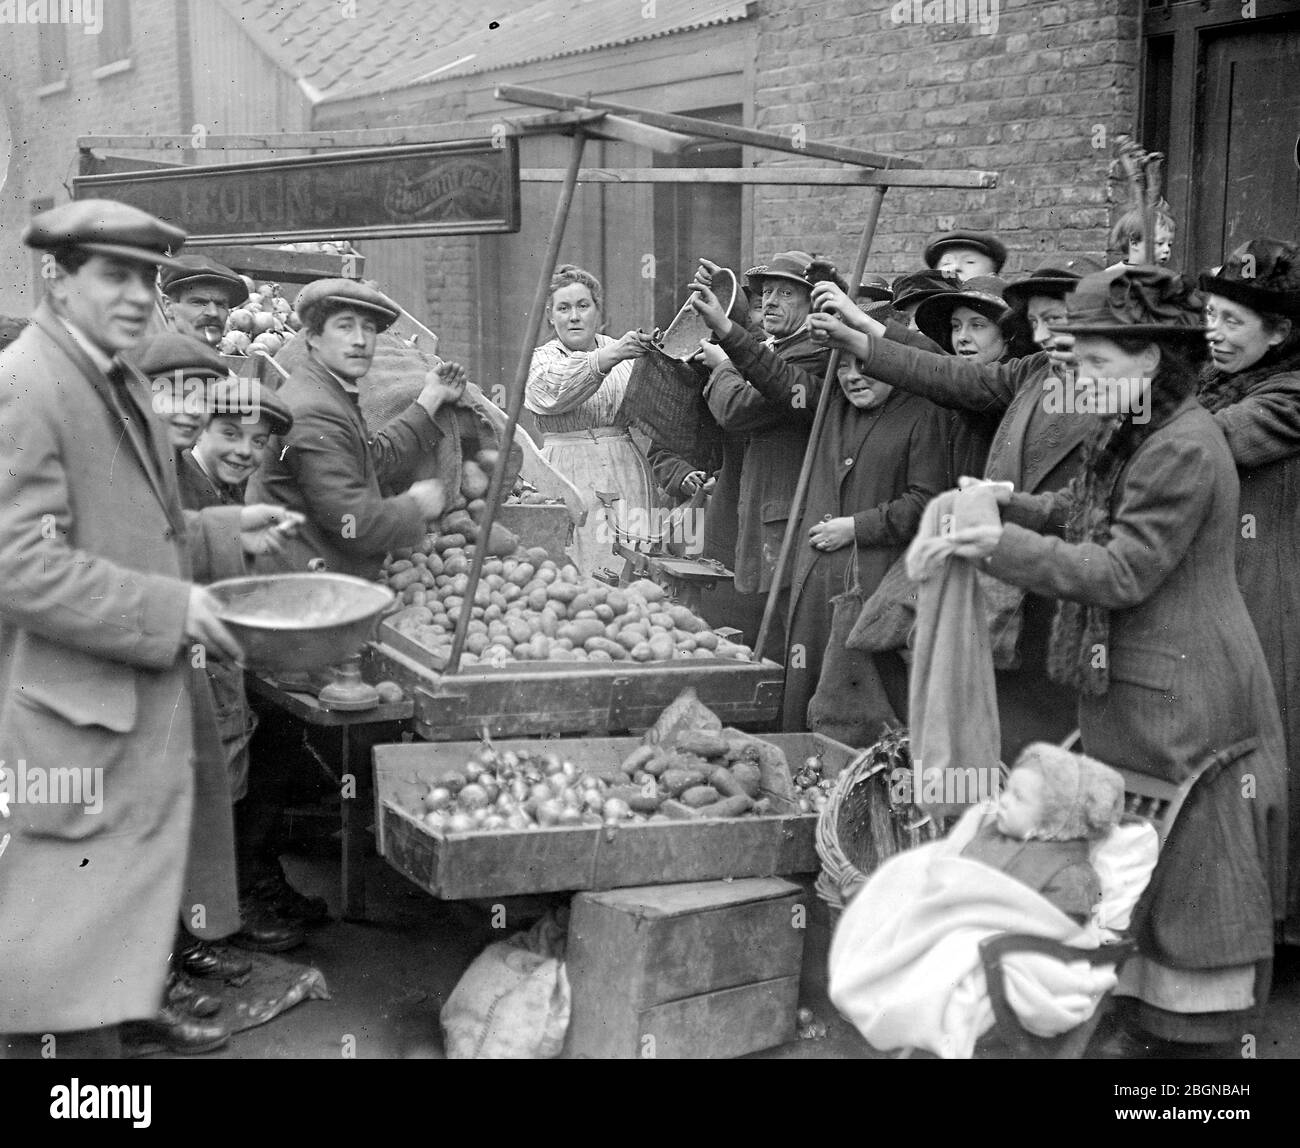 Der Kartoffelmangel - J. Collins, EIN patriotischer Gemüsehändler, der Kartoffeln zu 1d pro LB verkauft, vorausgesetzt, dass anderes Gemüse gekauft wird. - 5. März 191 Stockfoto